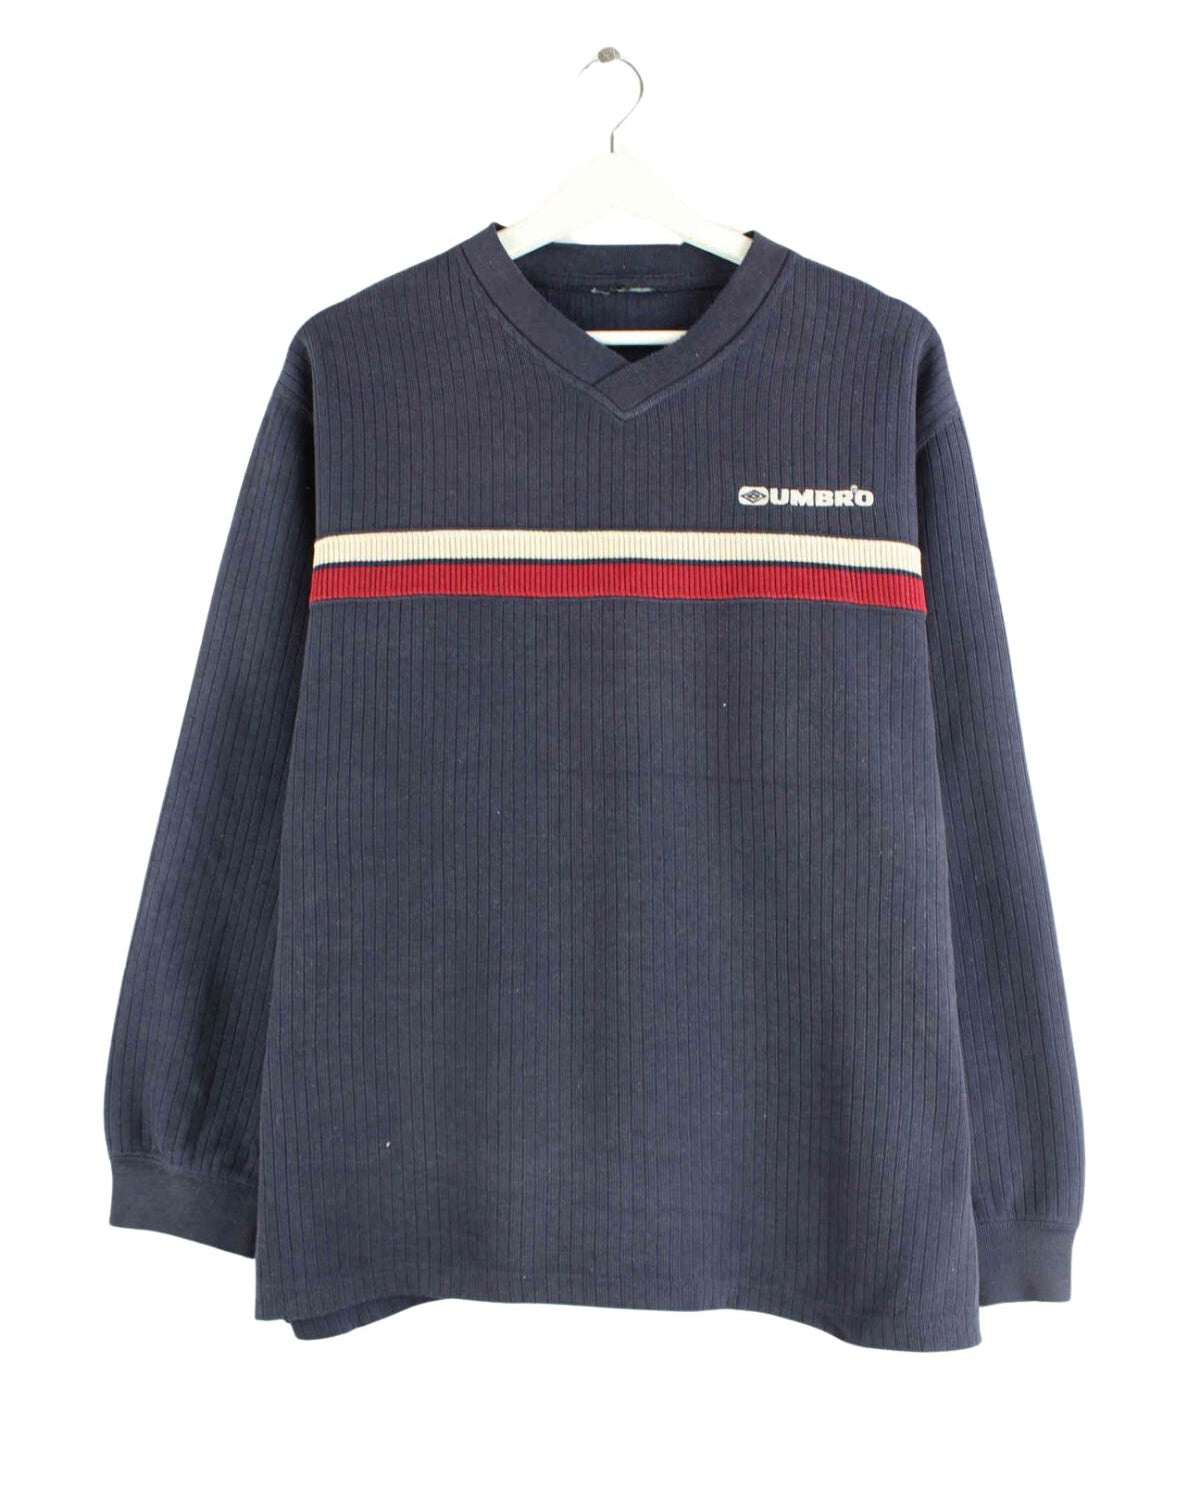 Umbro 90s Vintage Embroidered V-Neck Sweater Blau M (front image)